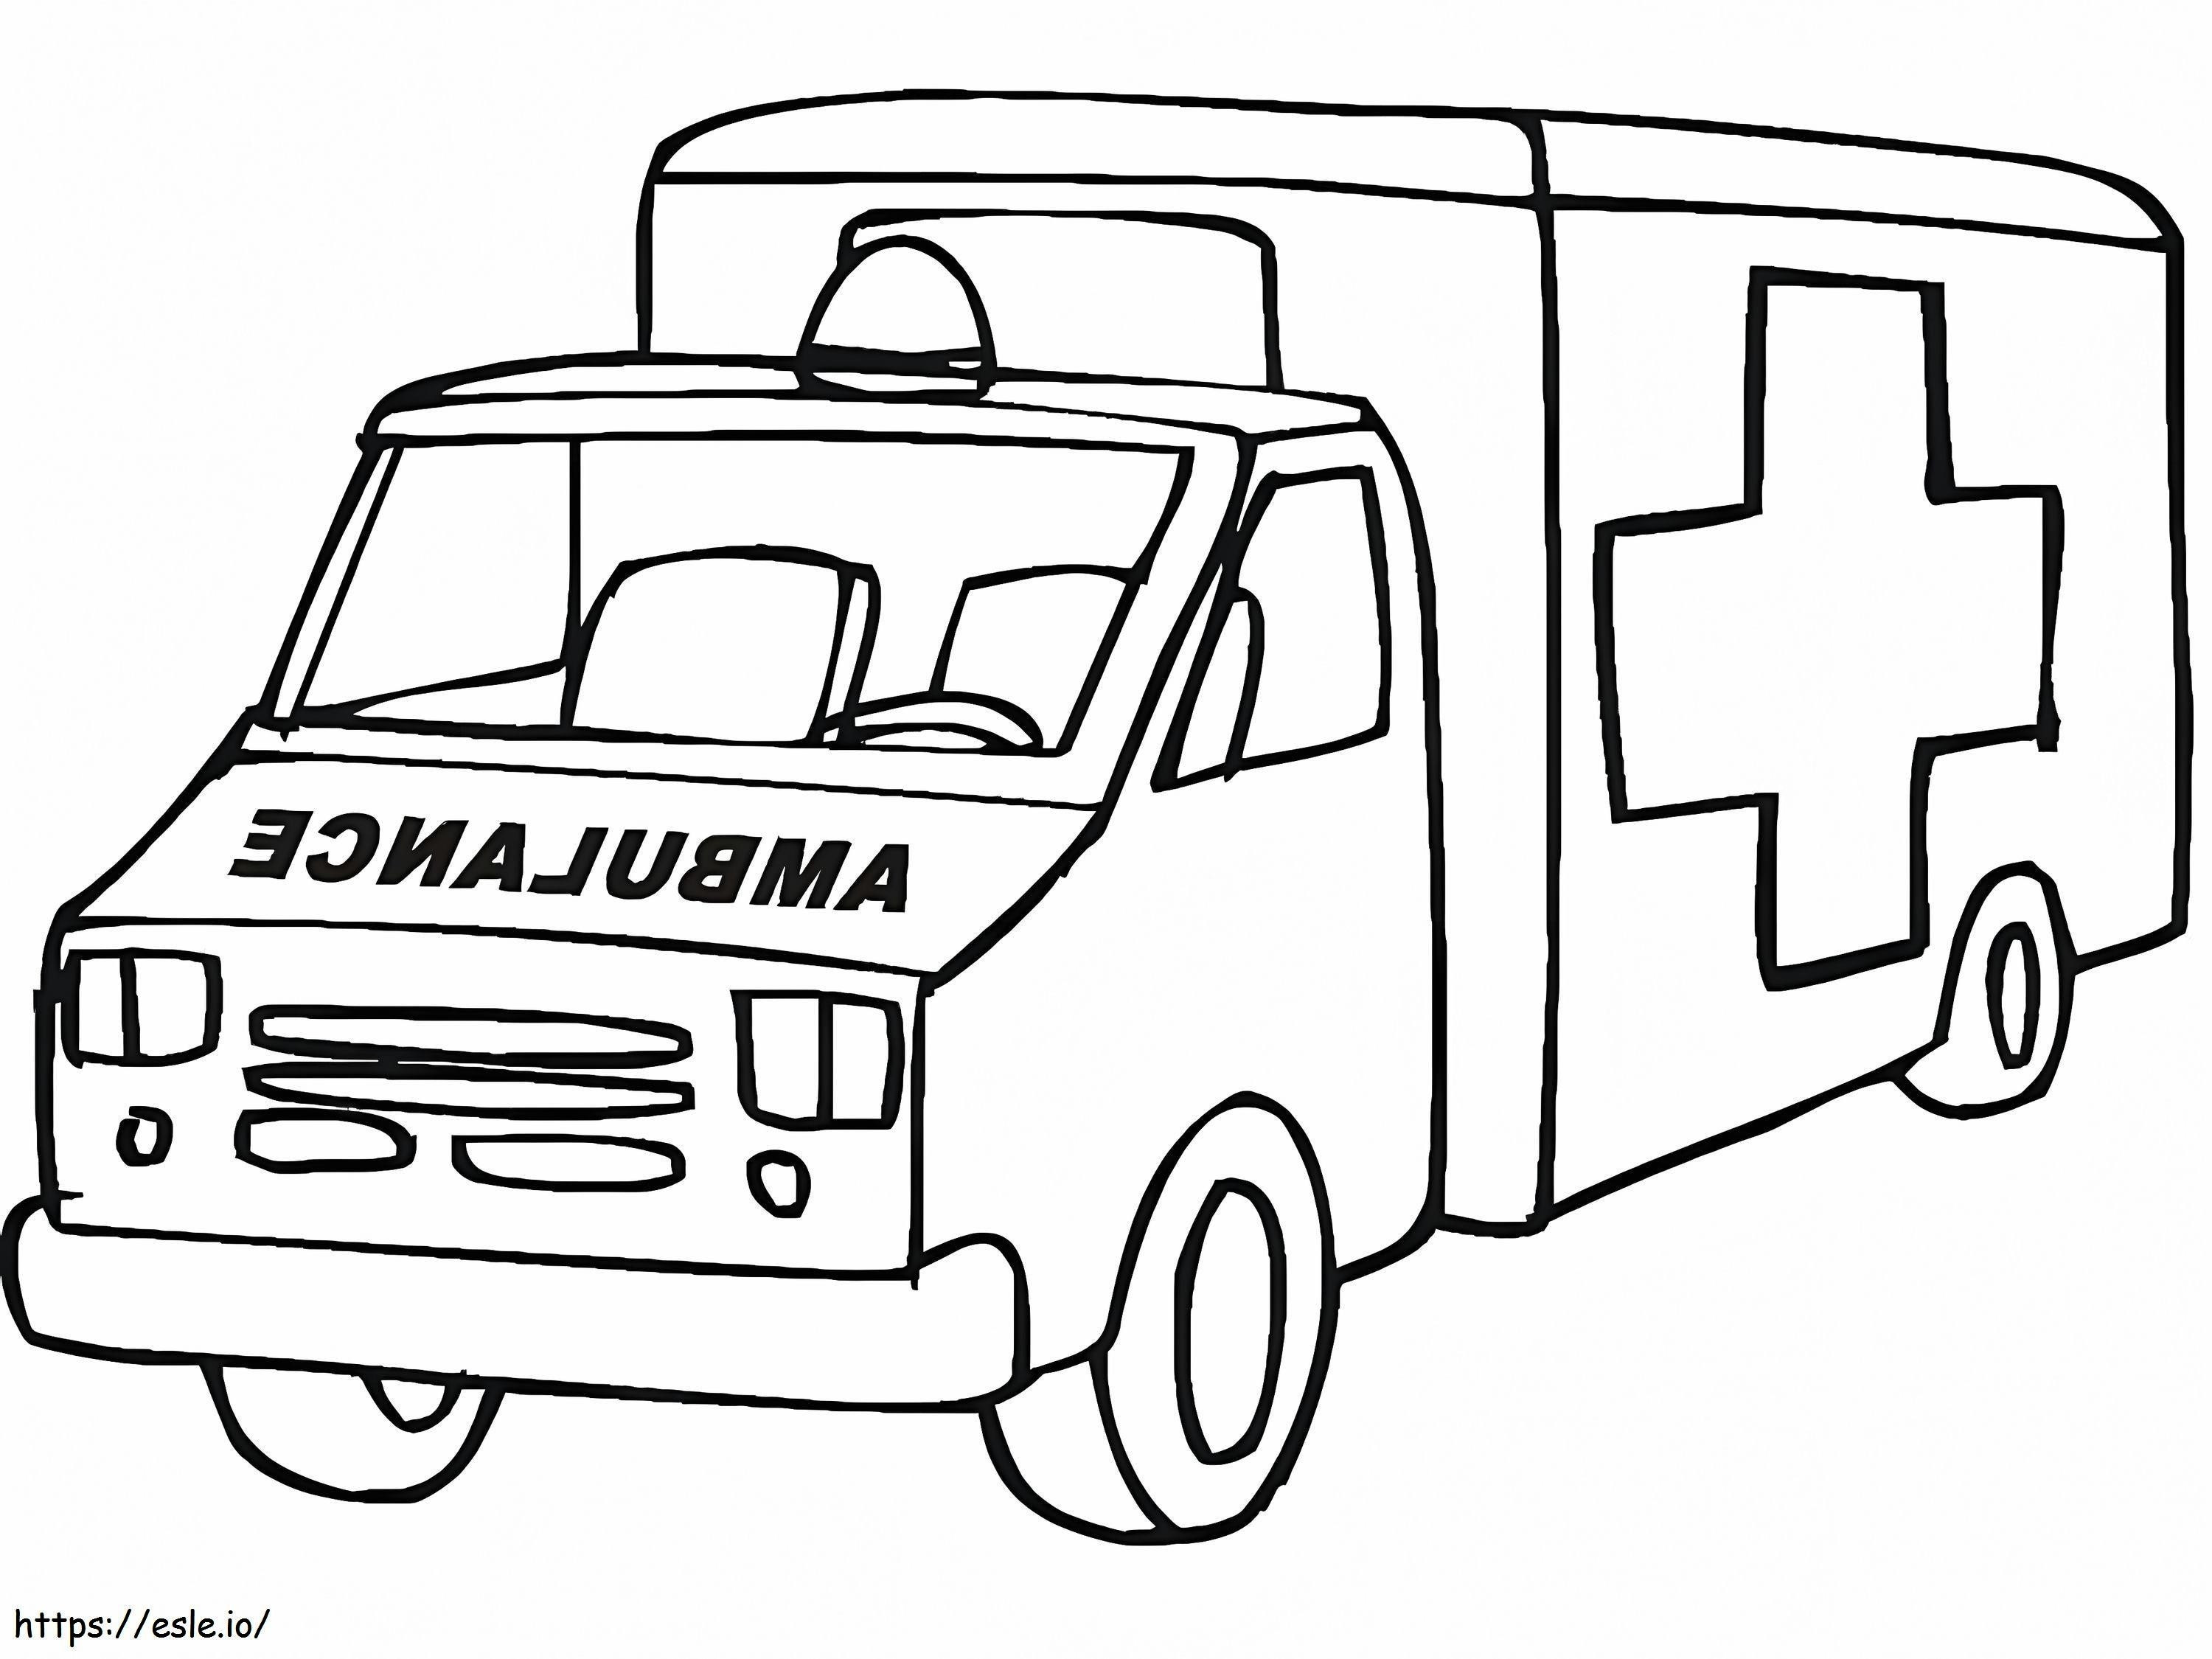 Ambulance 23 coloring page